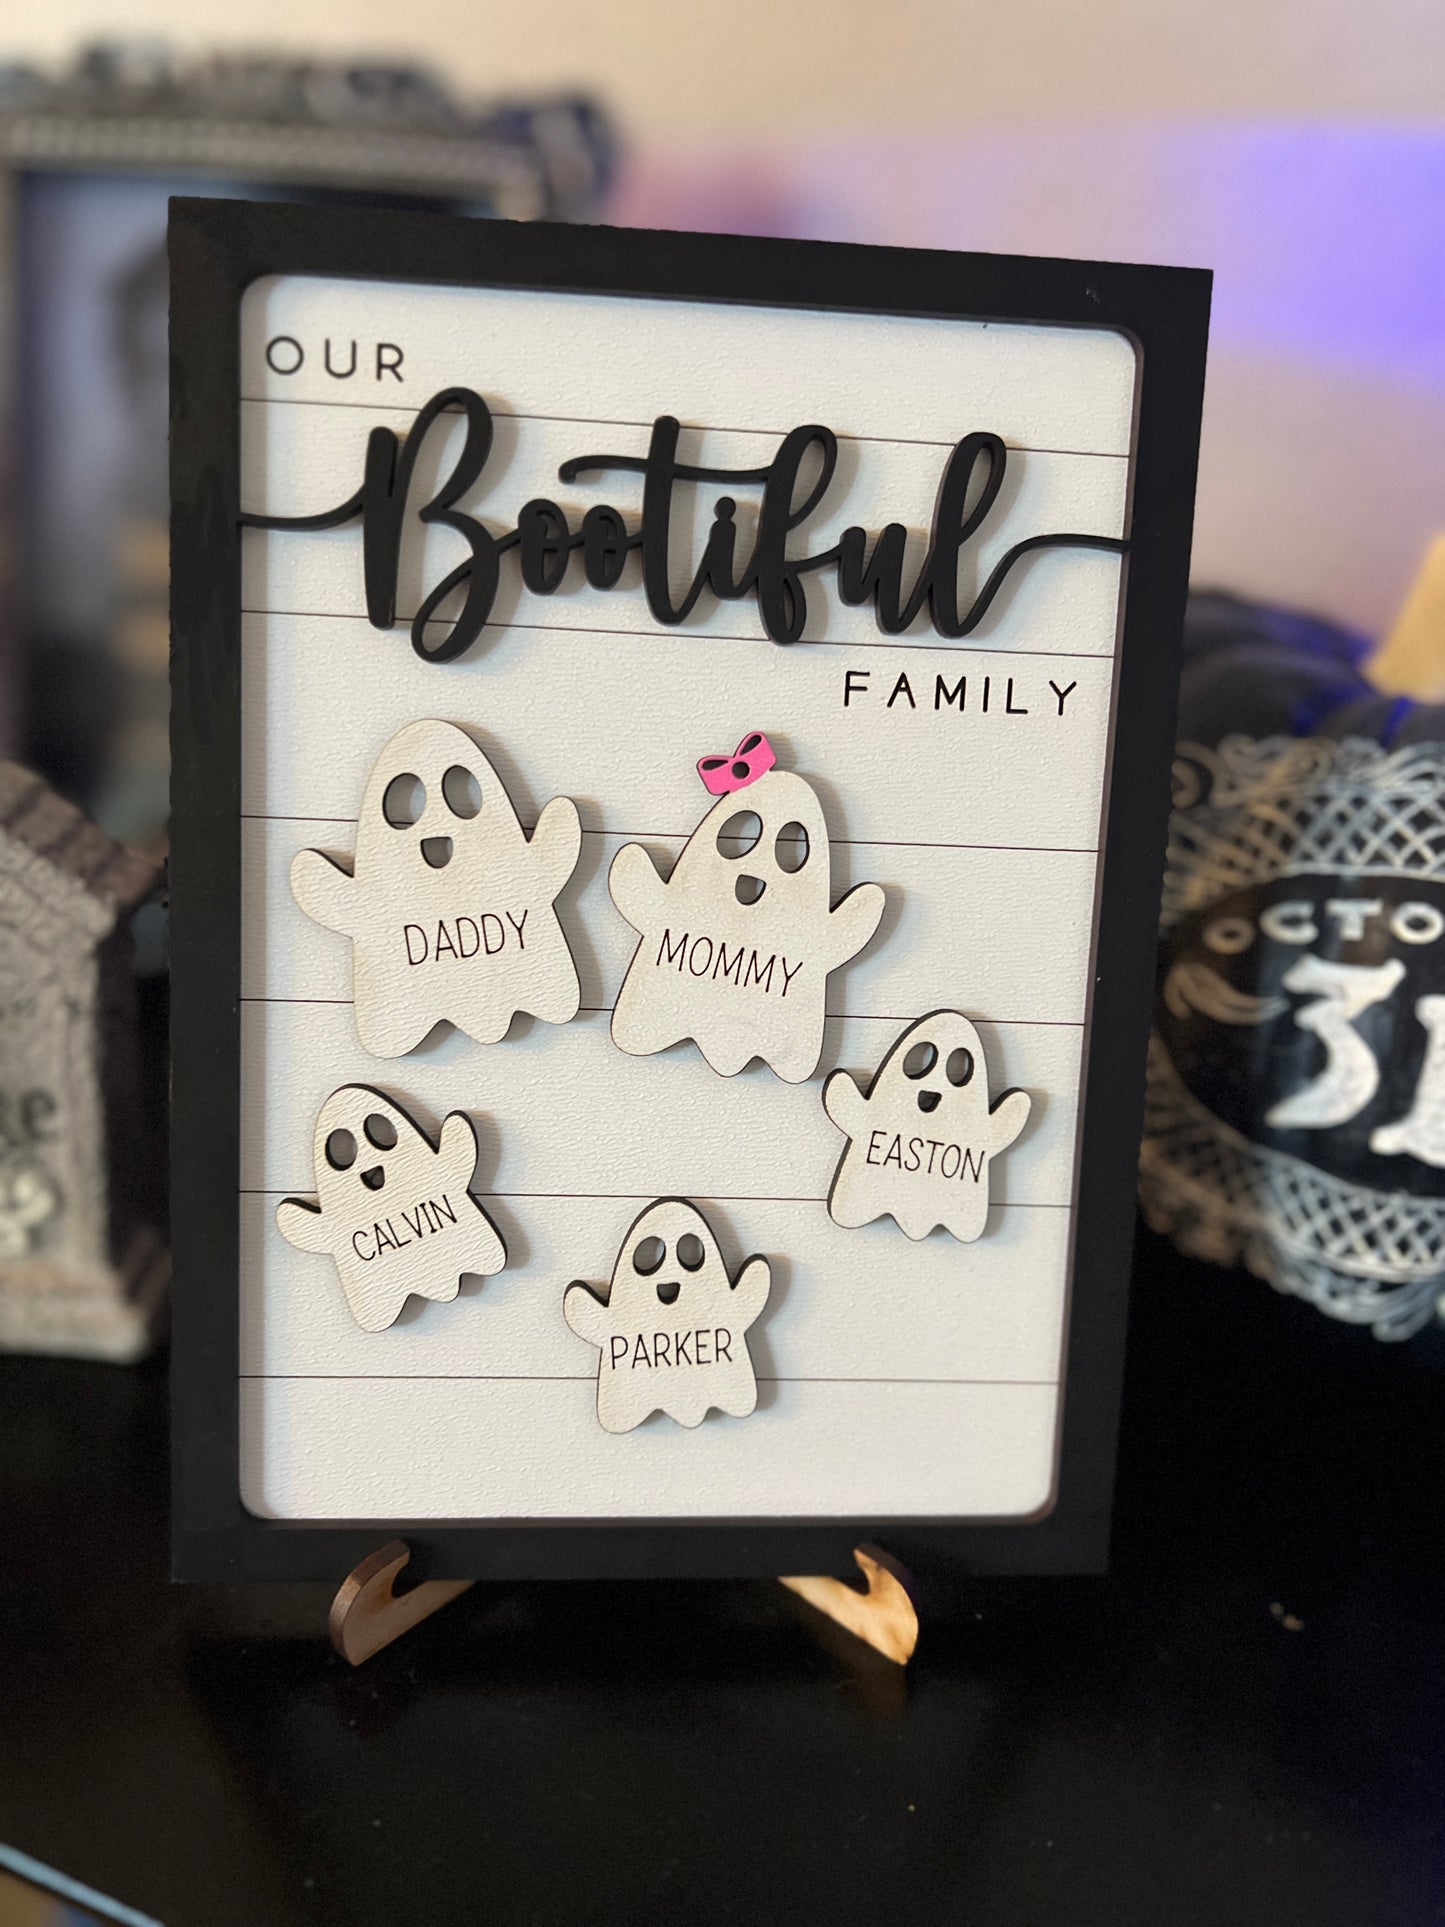 Boo-tiful family